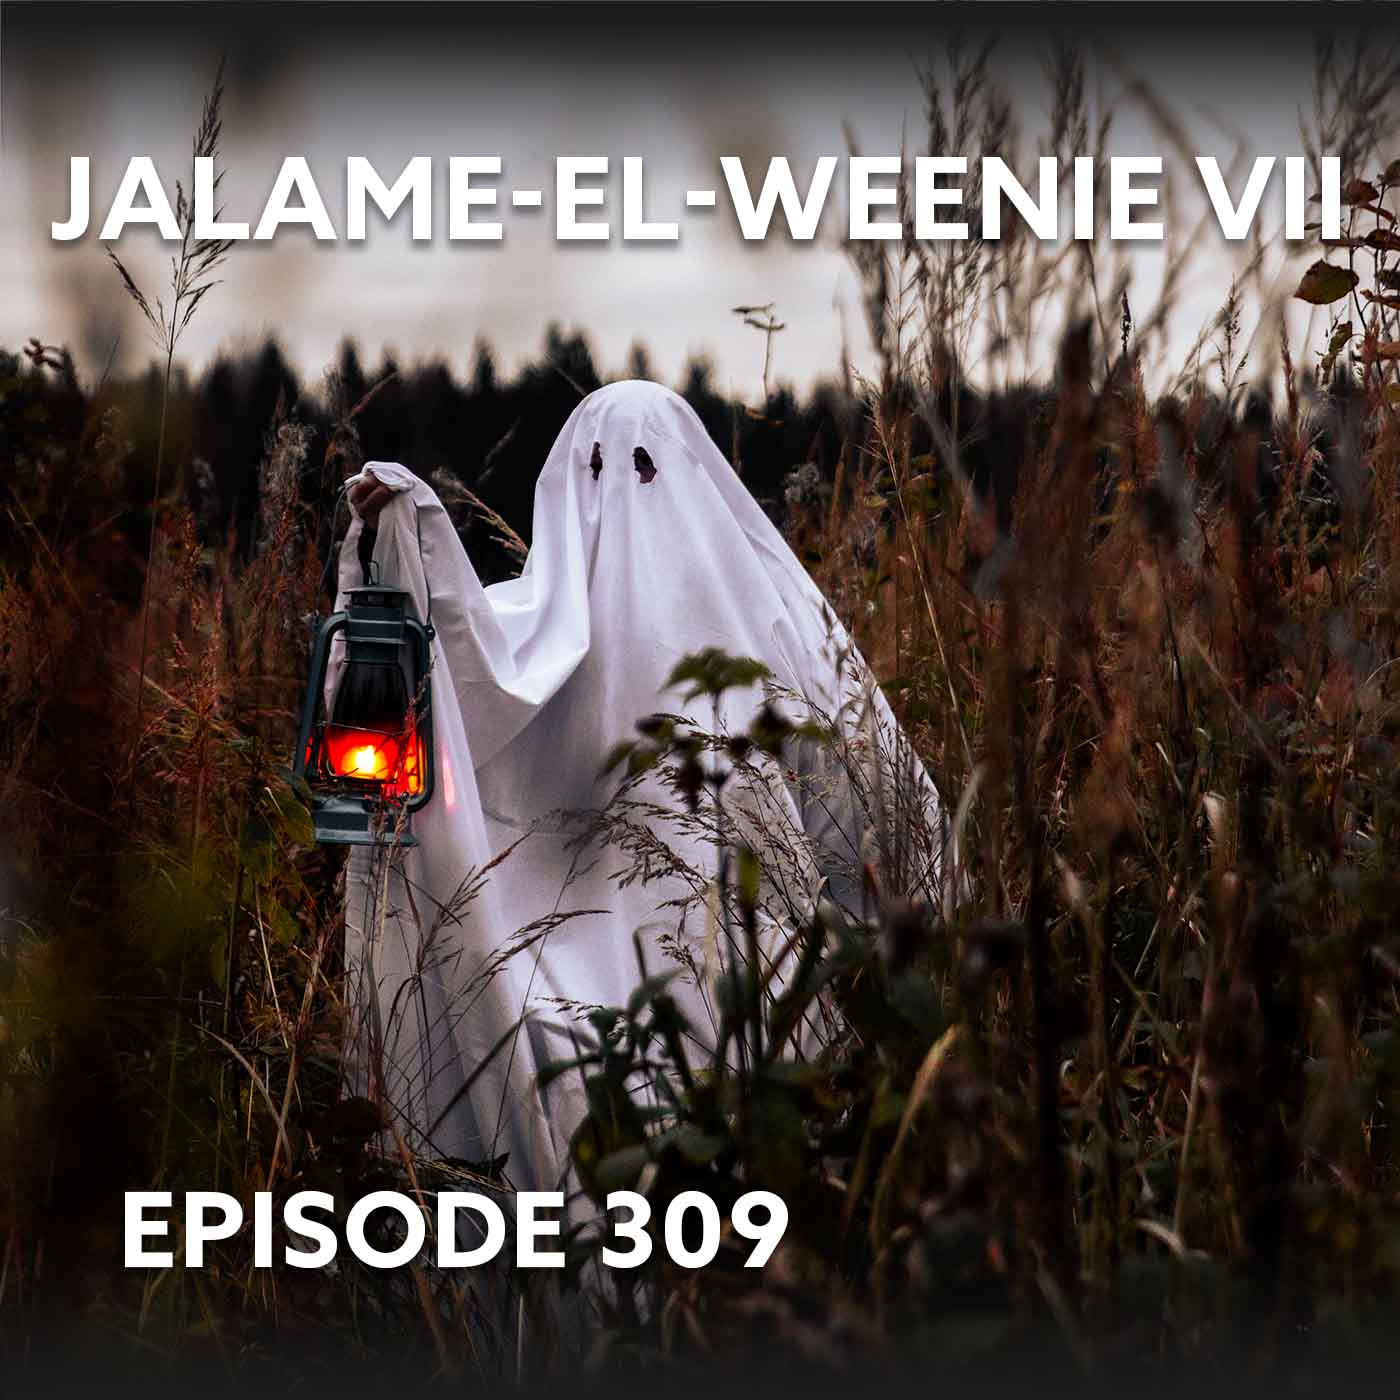 Episode 309 – Jalame-el-weenie VII